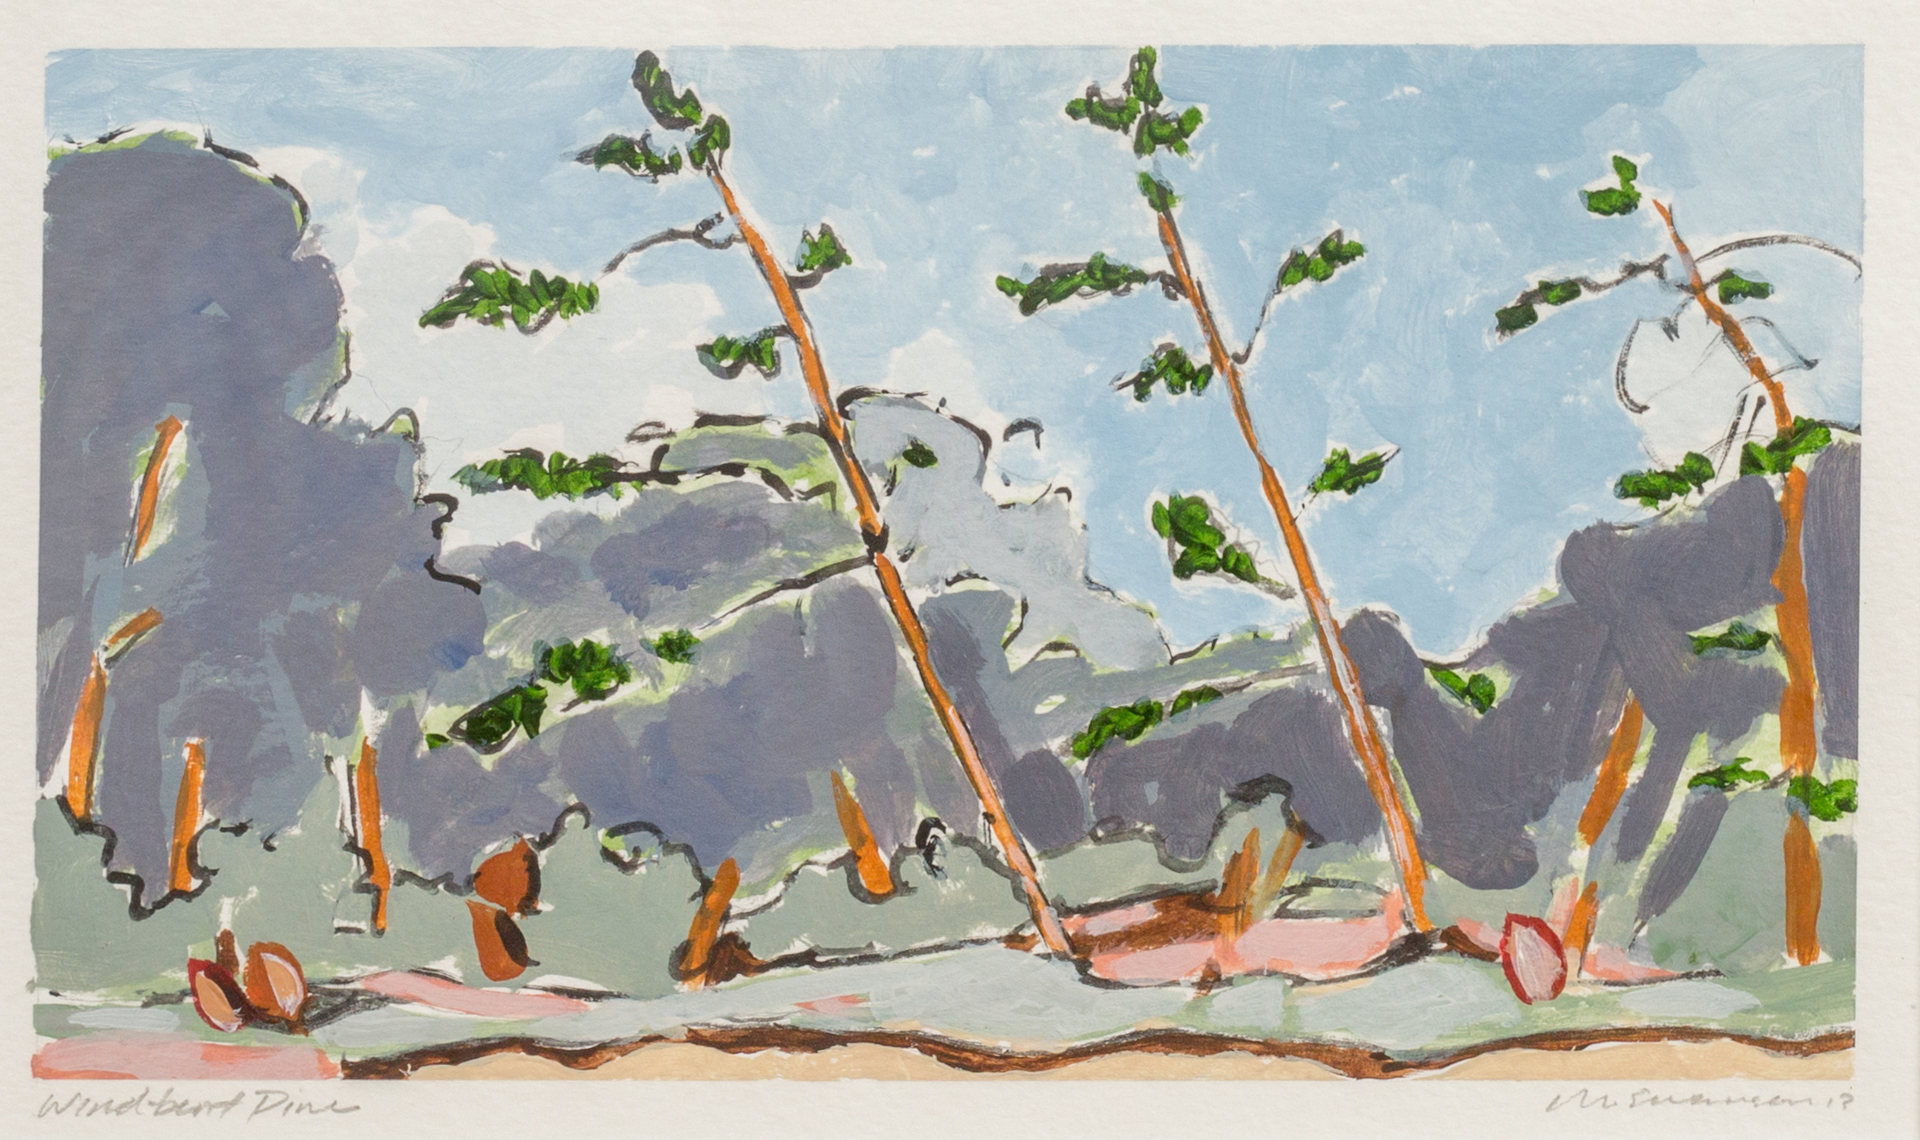 Wind Bent Pine by Matthew Swanson